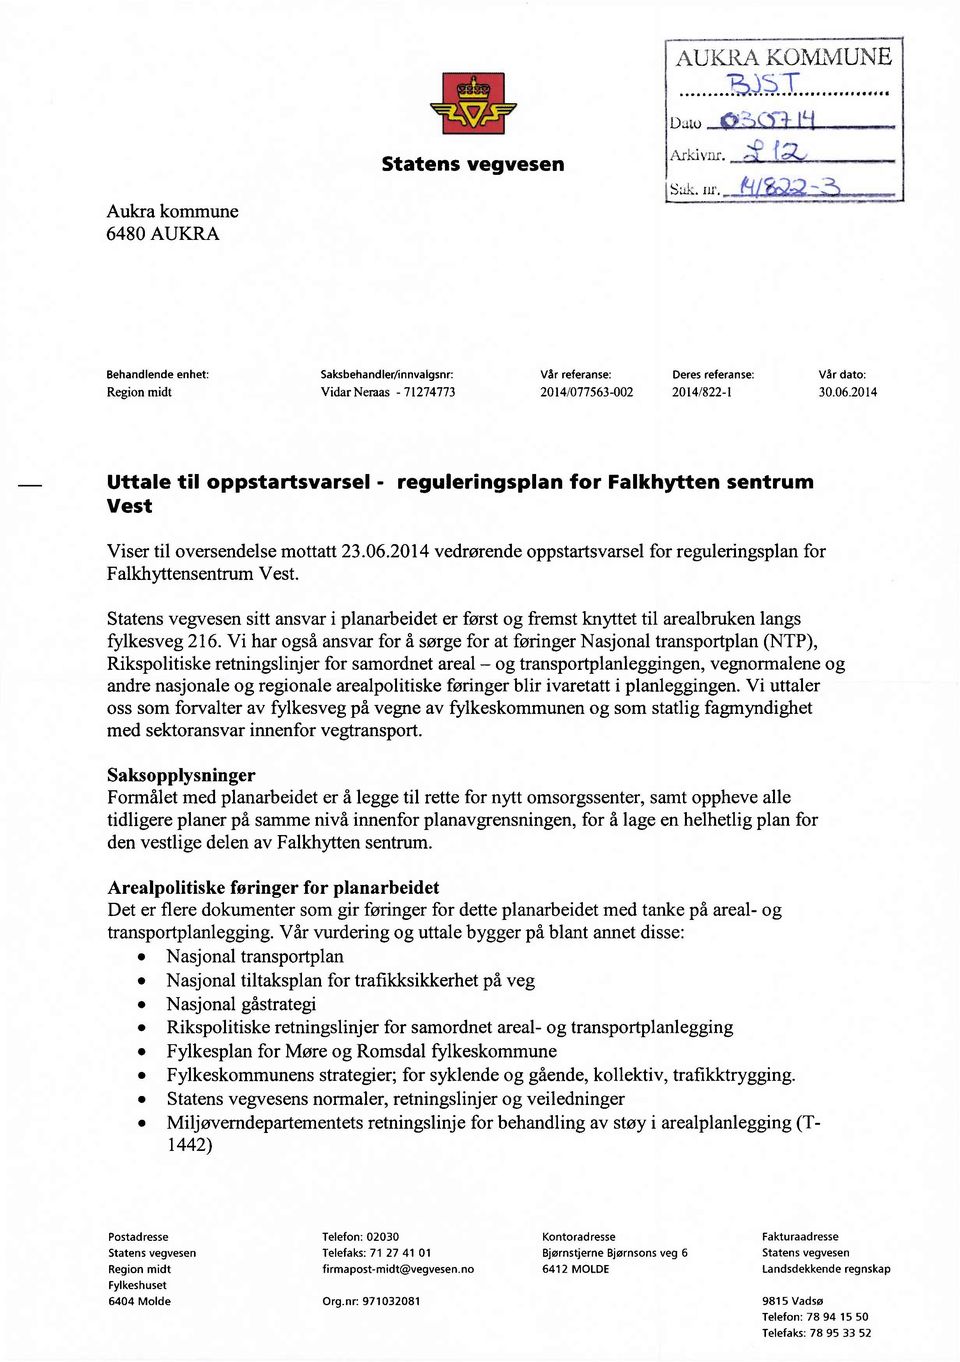 2014 Uttale til oppstartsvarsel - reguleringsplan for Falkhytten sentrum Vest Viser til oversendelsemottatt23.06.2014 vedrørendeoppstartsvarsel for reguleringsplanfor FalkhyttensentrumVest.